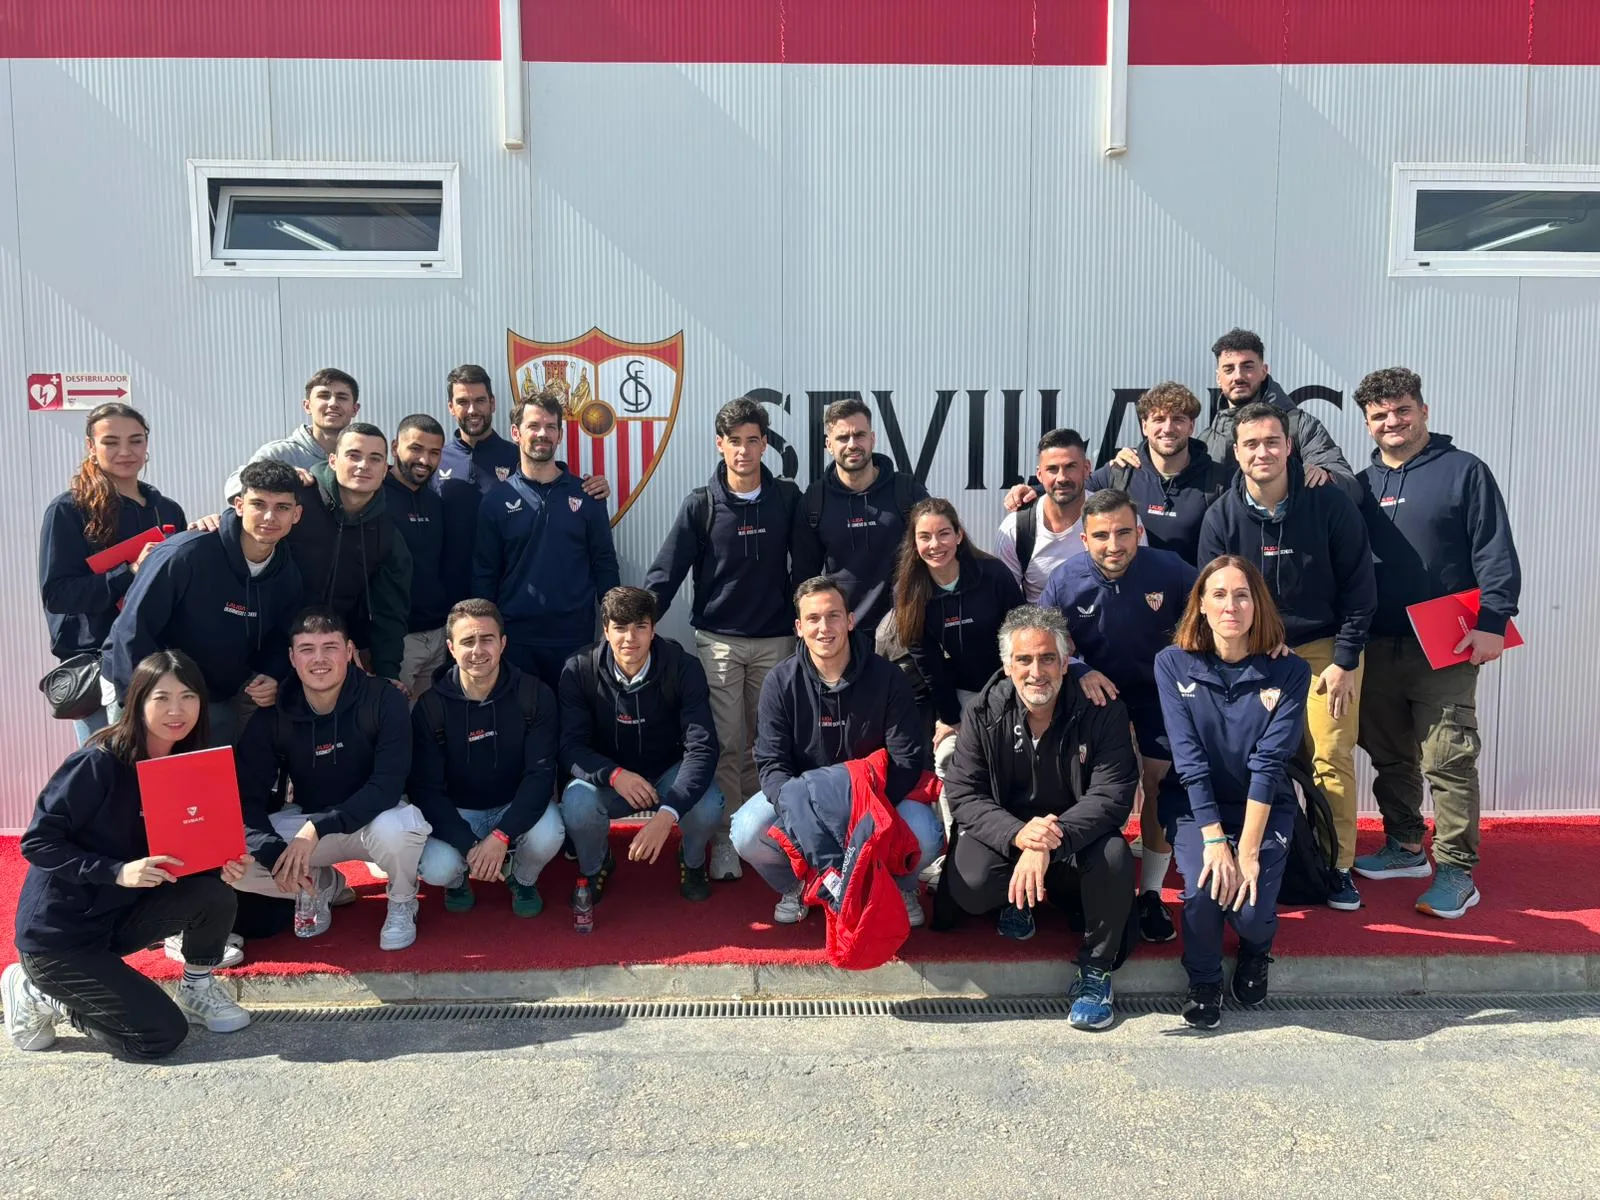 Jornada formativa en las instalaciones del Sevilla FC junto a los alumnos de LaLiga Business School